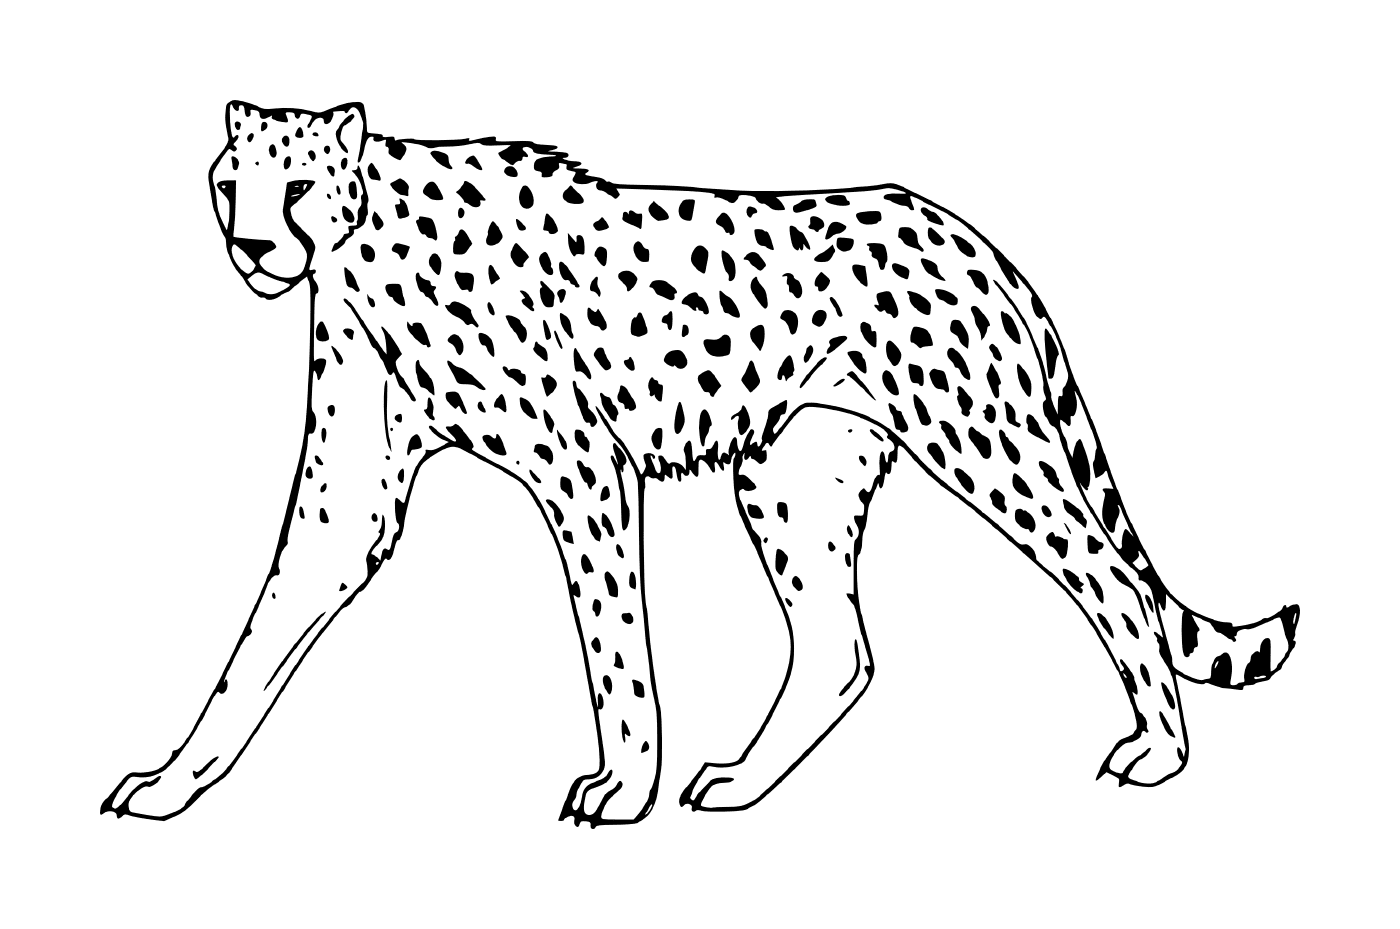  un ghepardo che cammina 